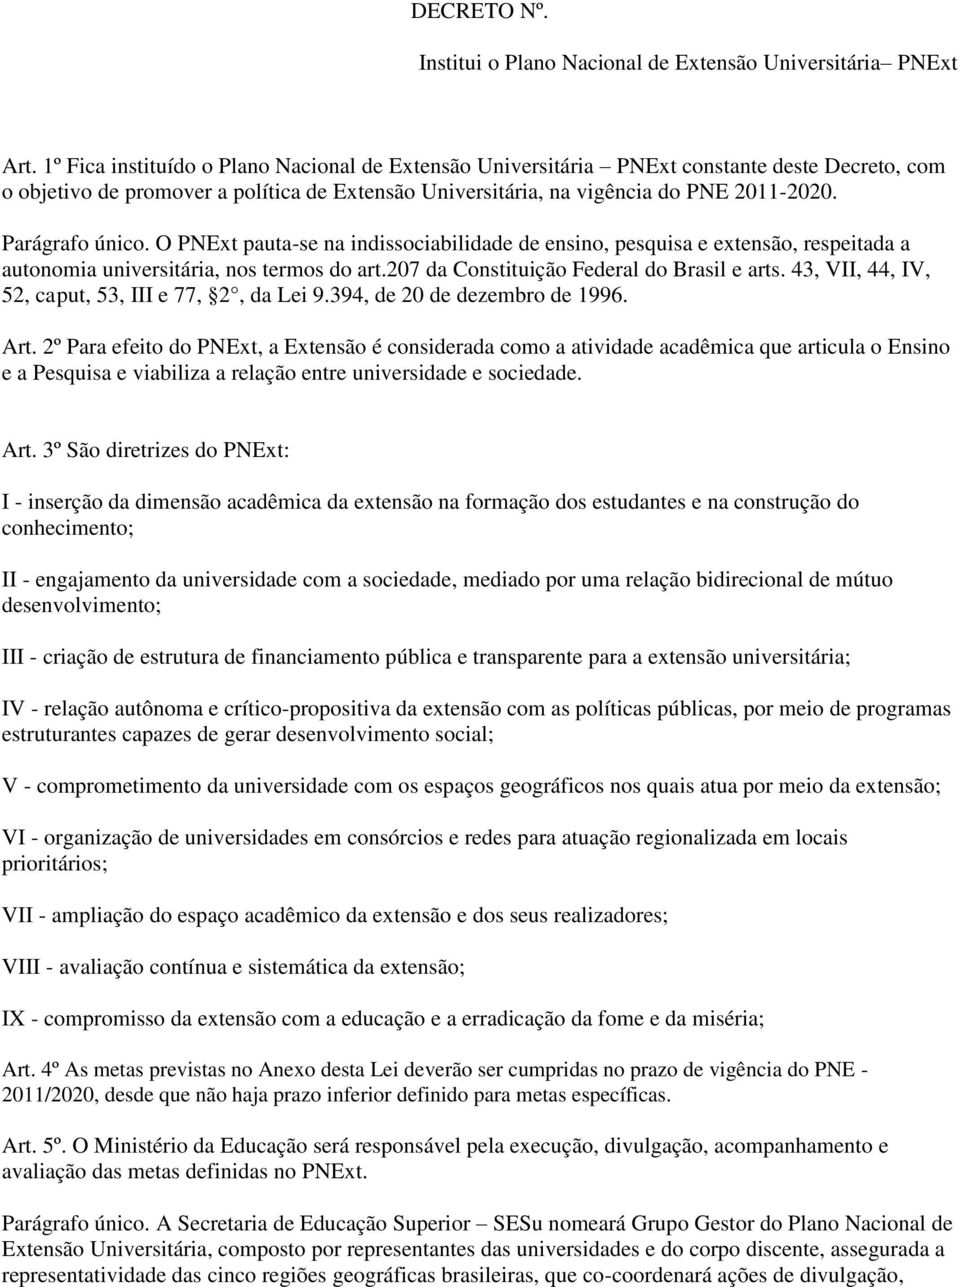 Parágrafo único. O PNExt pauta-se na indissociabilidade de ensino, pesquisa e extensão, respeitada a autonomia universitária, nos termos do art.207 da Constituição Federal do Brasil e arts.